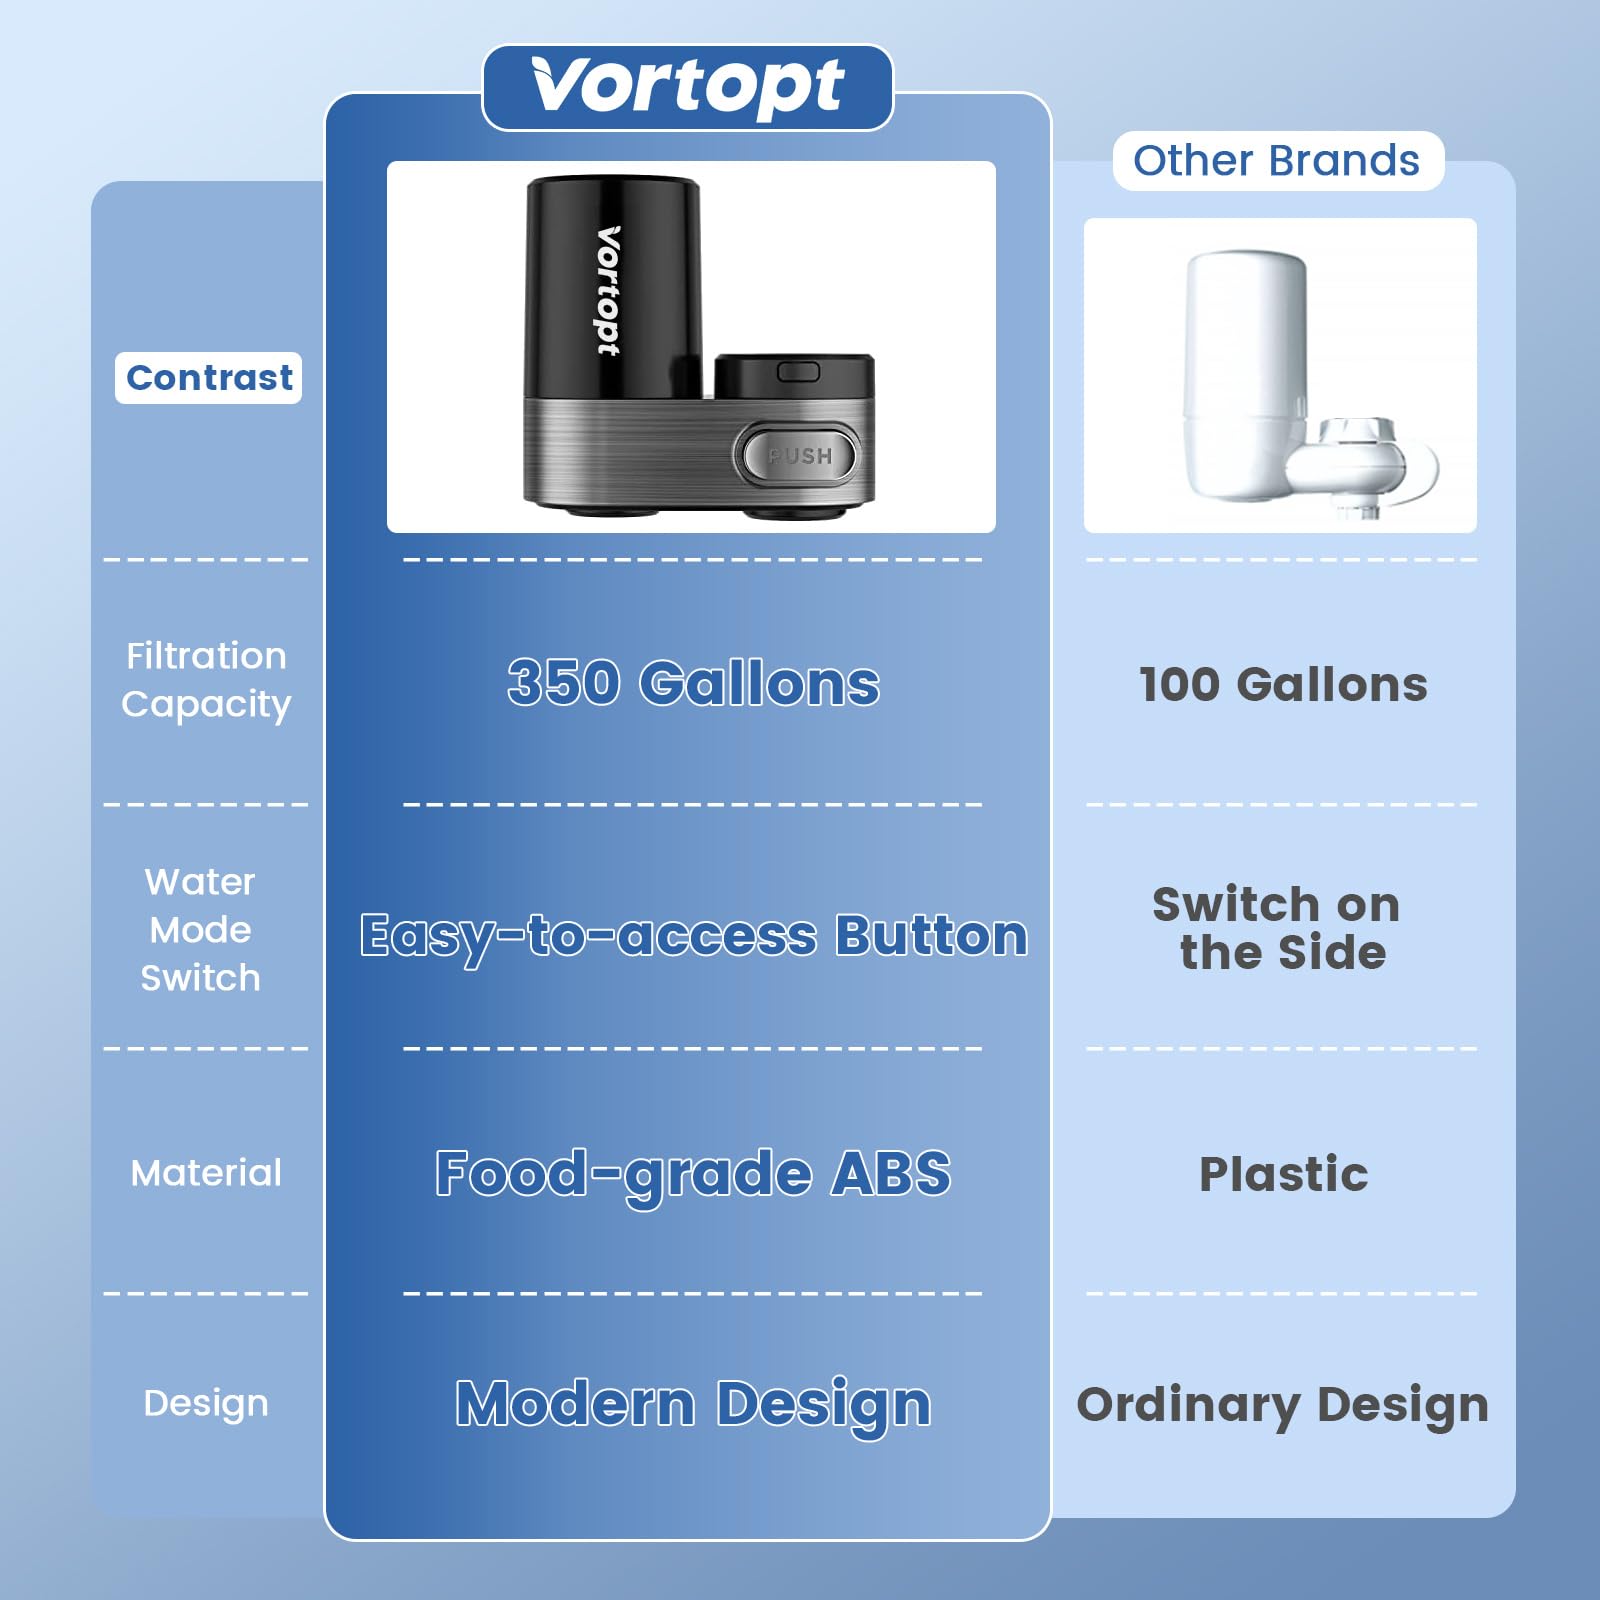 Vortopt Water Filter for Sink, Black Faucet Water Filter, 350 Gallons Water Purifier for Faucet, Mount Tap Water Filtration System for Kitchen, Bathroom, Reduces Odor, Chlorine, Bad Taste, T5